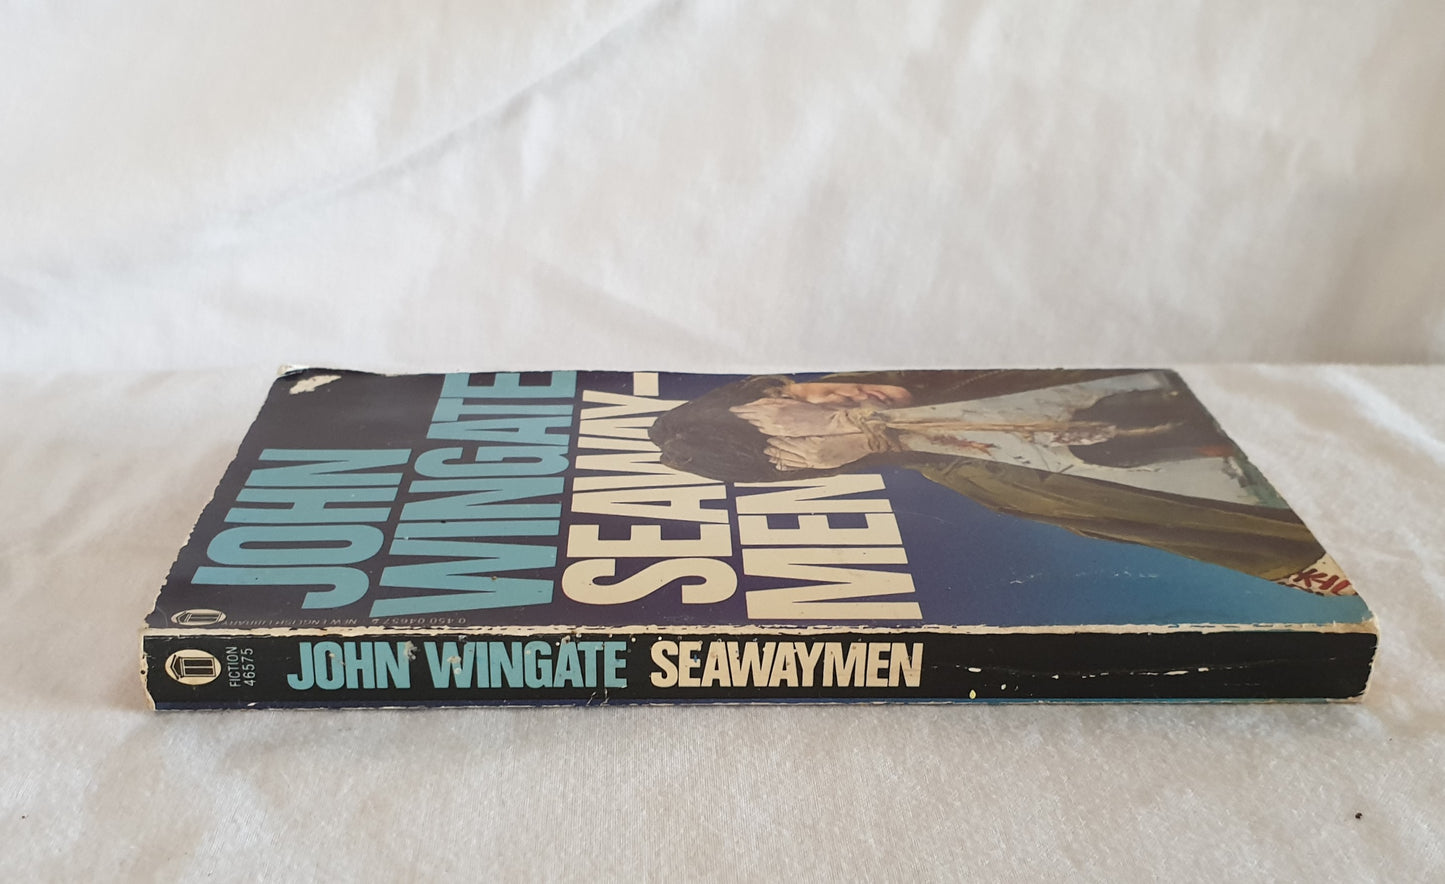 Seawaymen by John Wingate